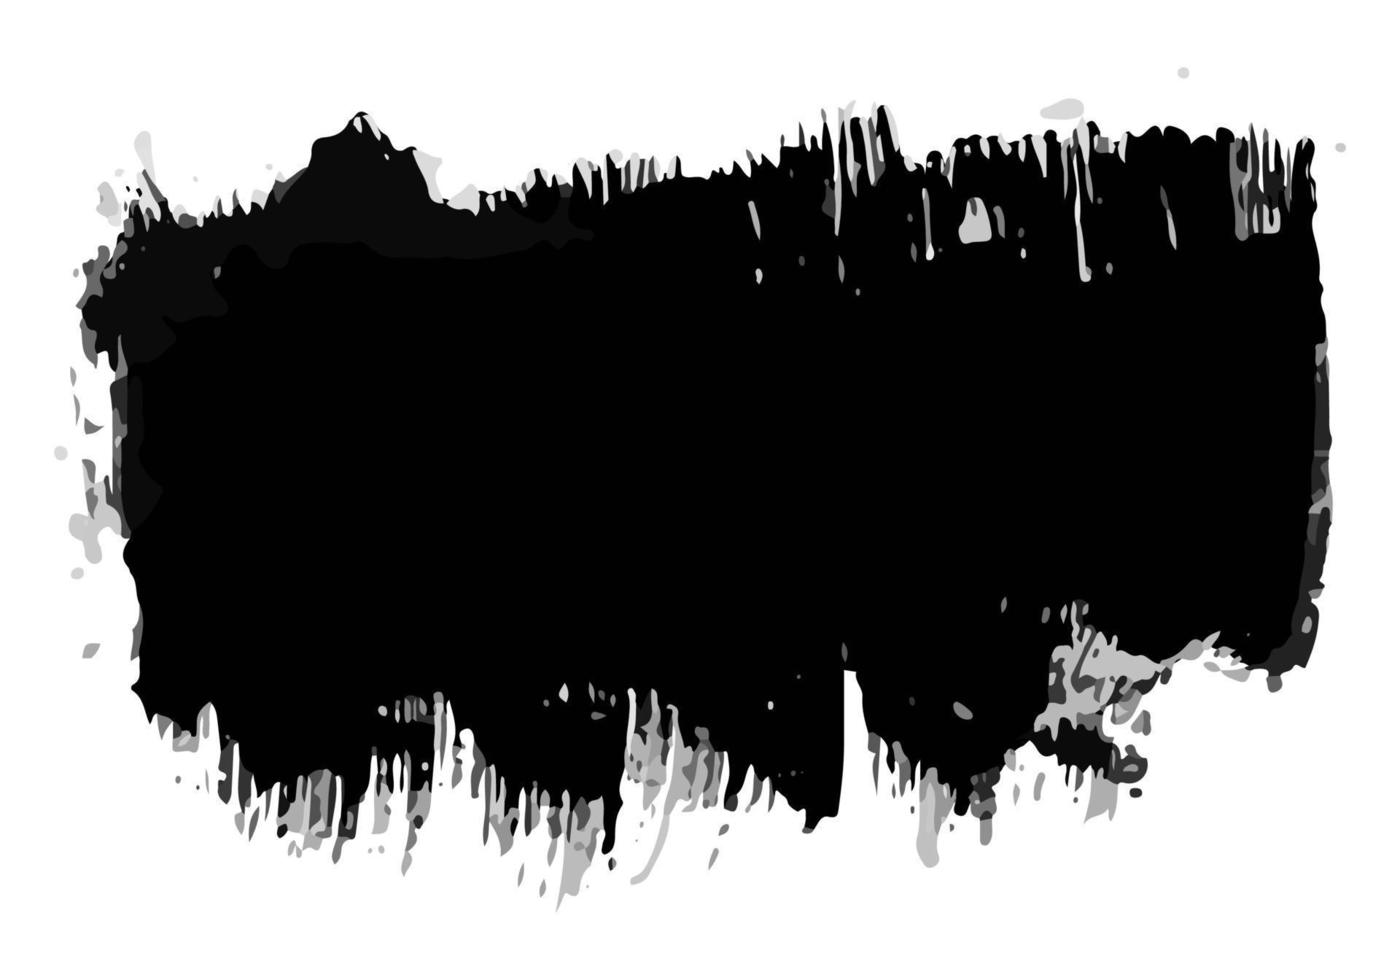 tache d'encre noire dessinée à la main. tache d'encre isolée sur fond blanc. illustration vectorielle vecteur